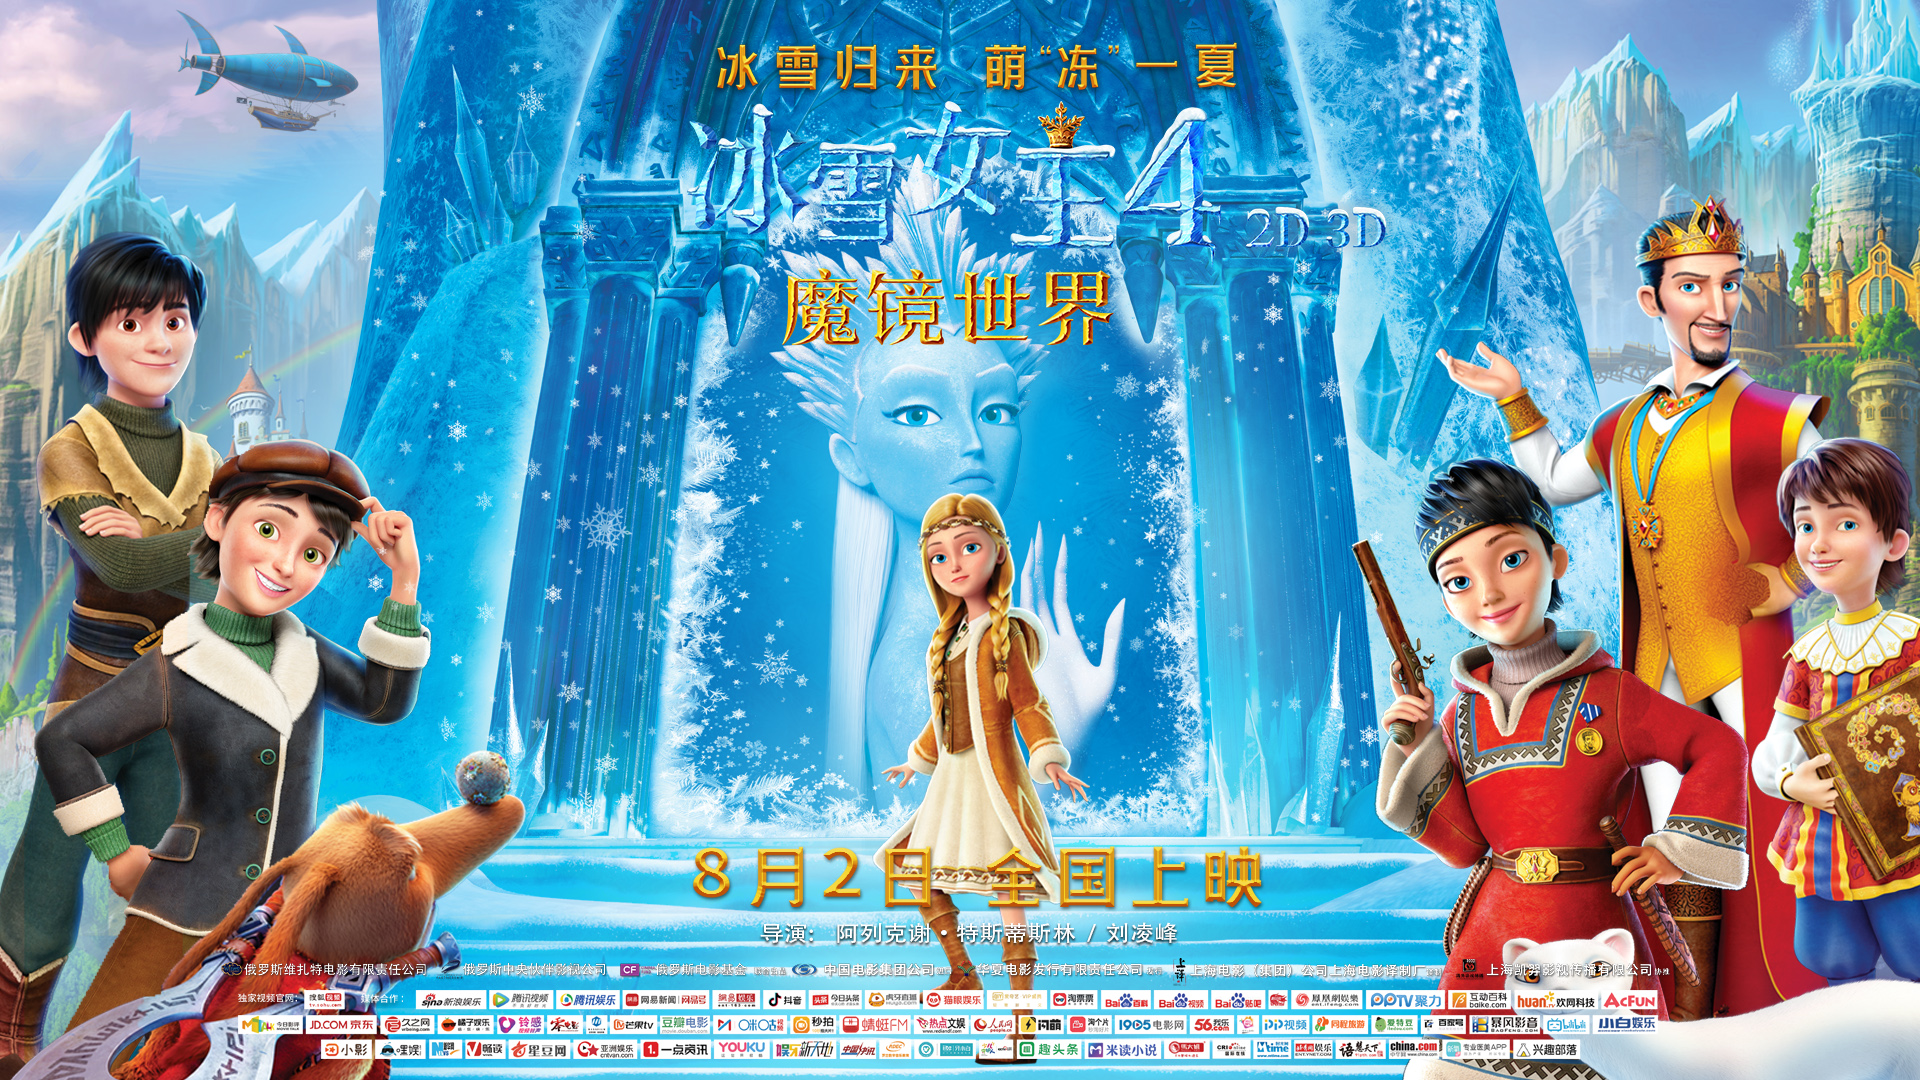 冰雪女王4魔镜世界普通话